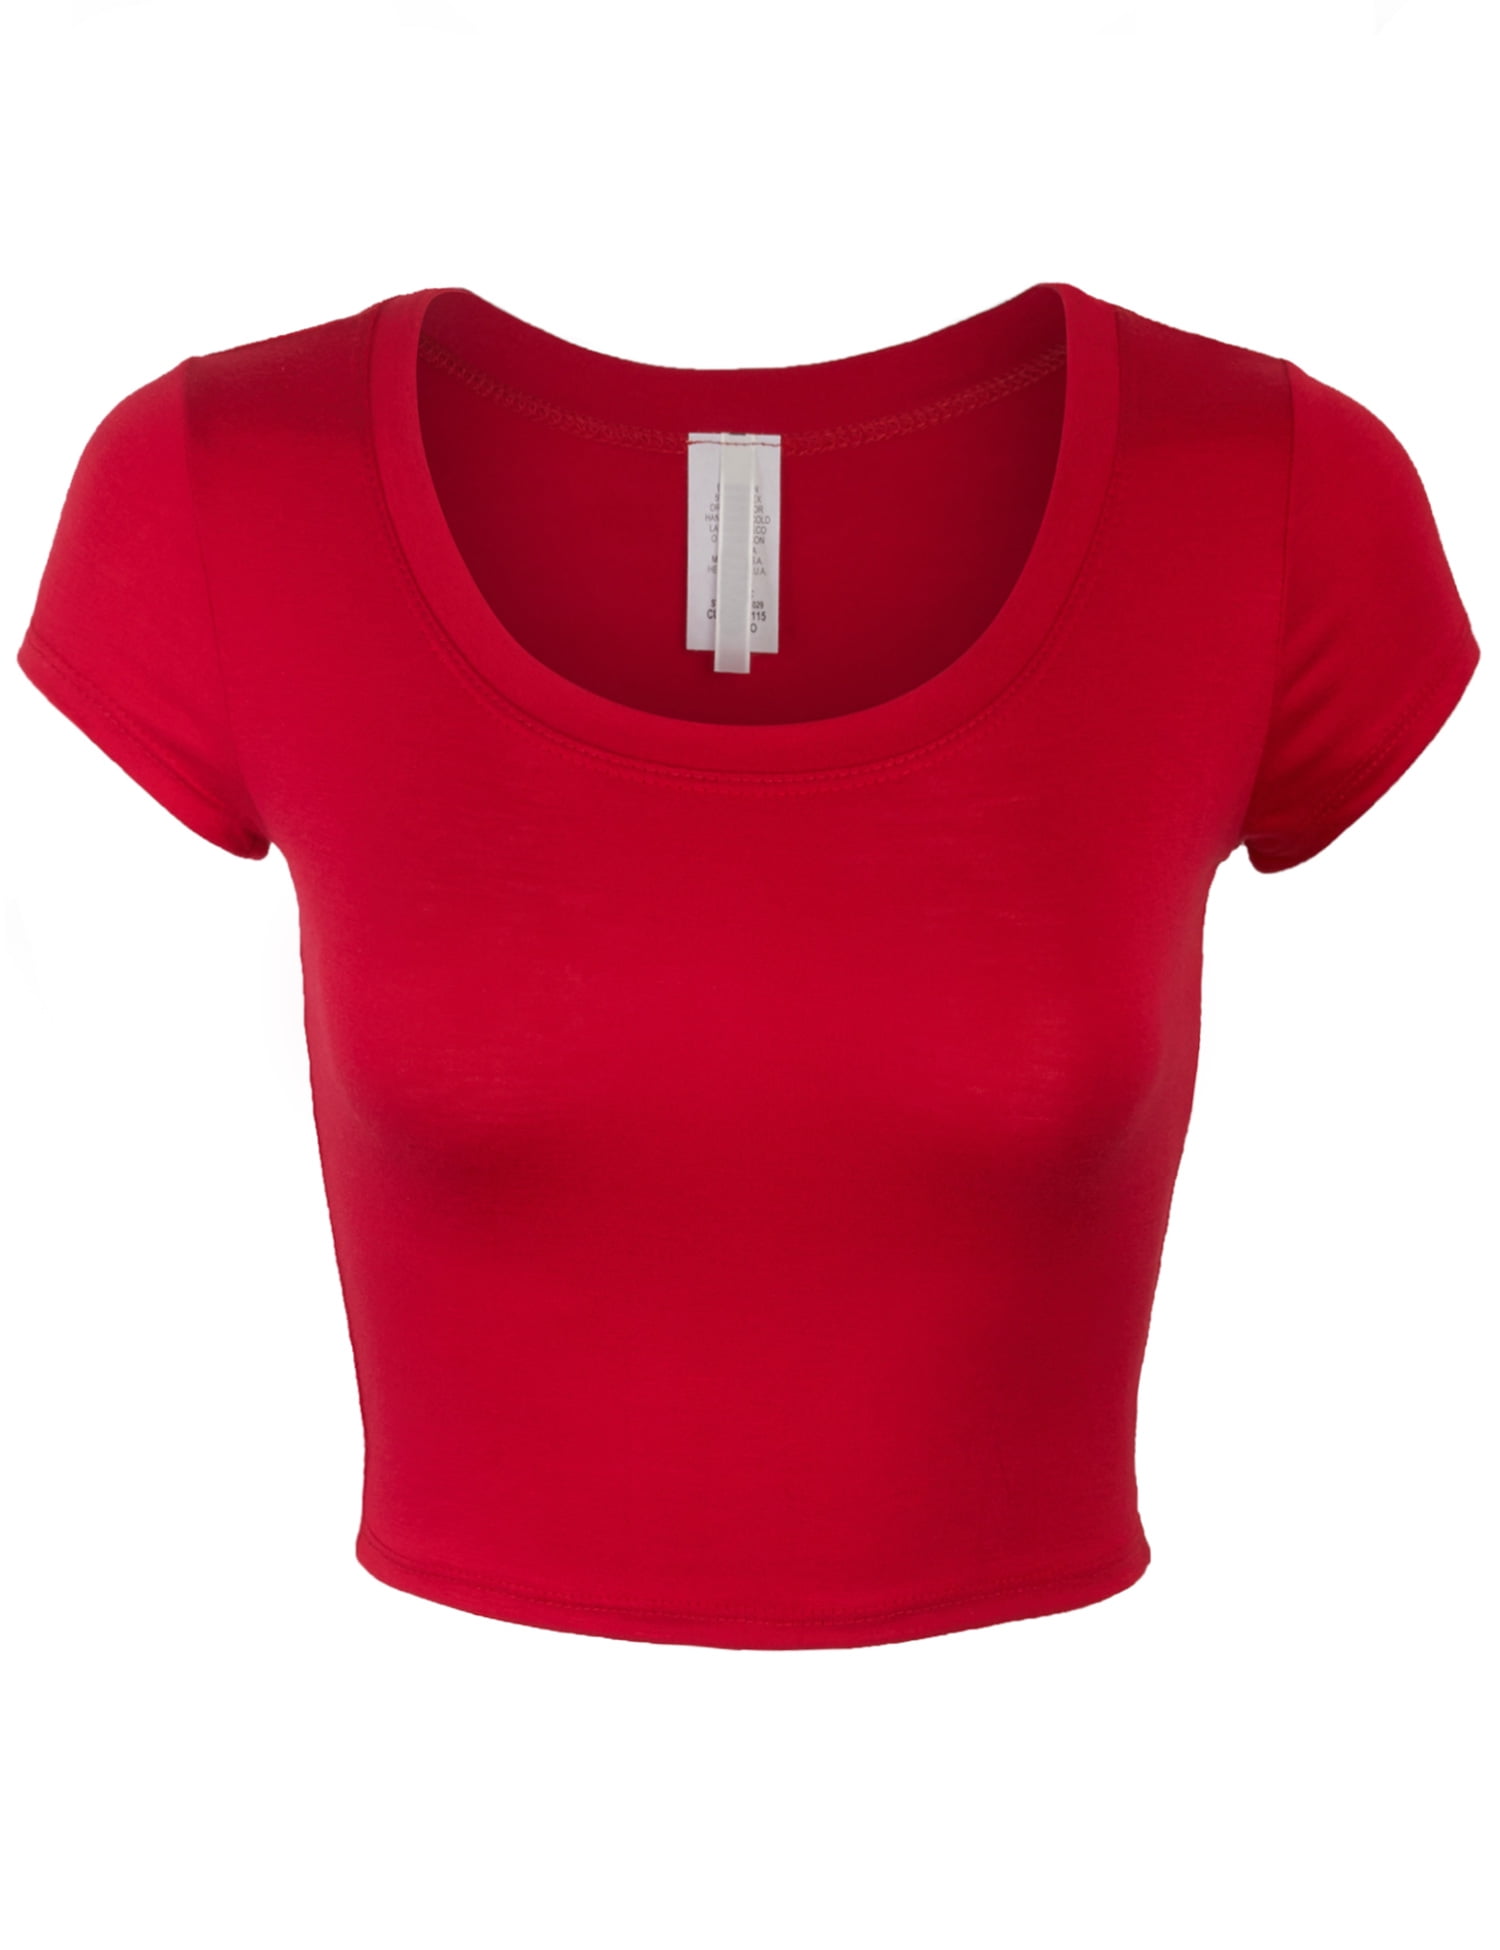 women crop top Dark Red t-shirt Top red lady tee top